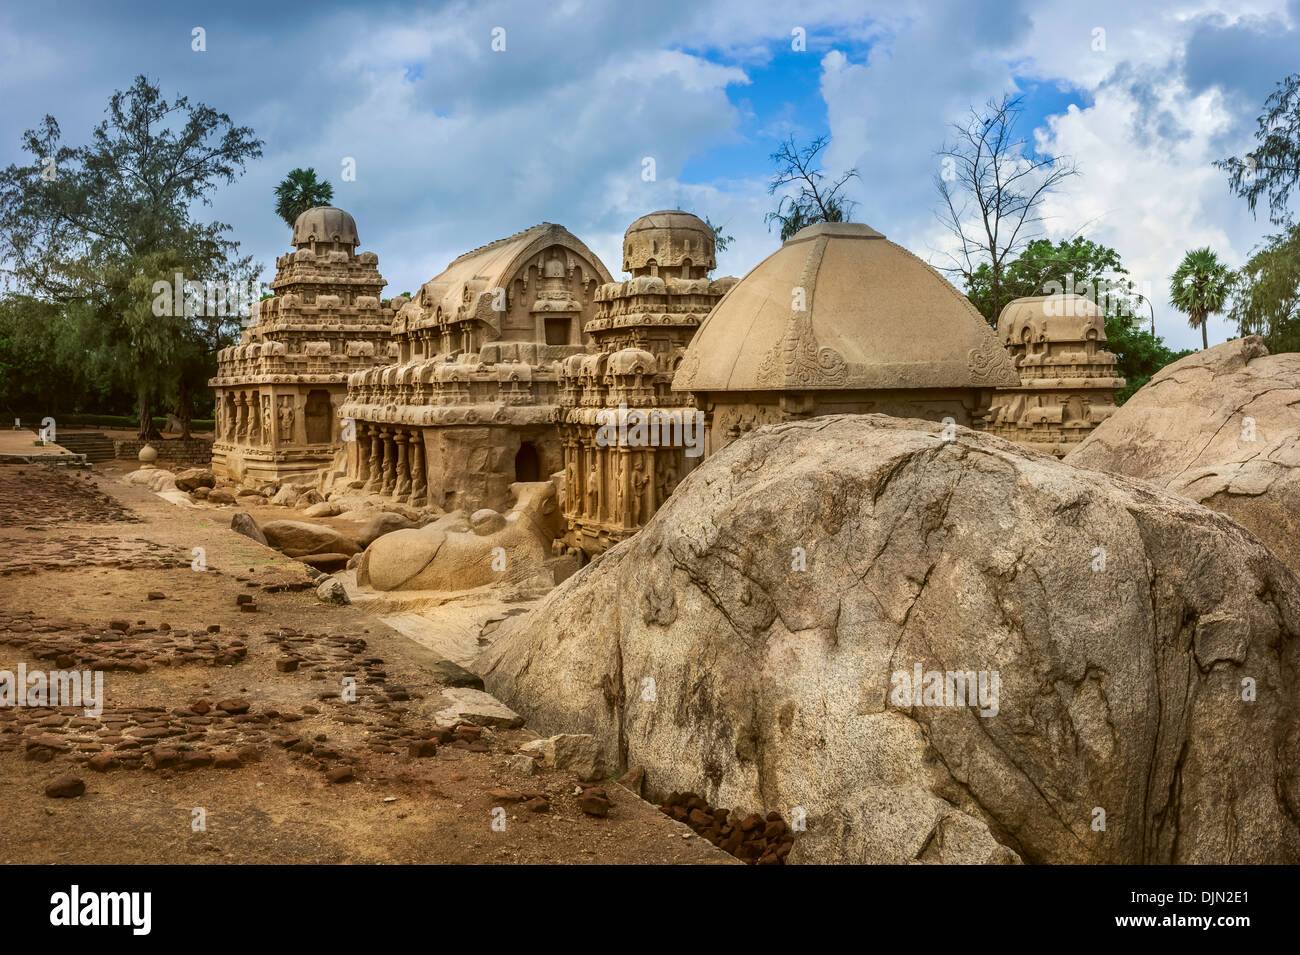 Fünf Rathas, alten monolithischen Stein Schnitzereien, fotografiert nach einem Starkregen Sturm in Mamallapuram, Tamil Nadu, Indien. Stockfoto